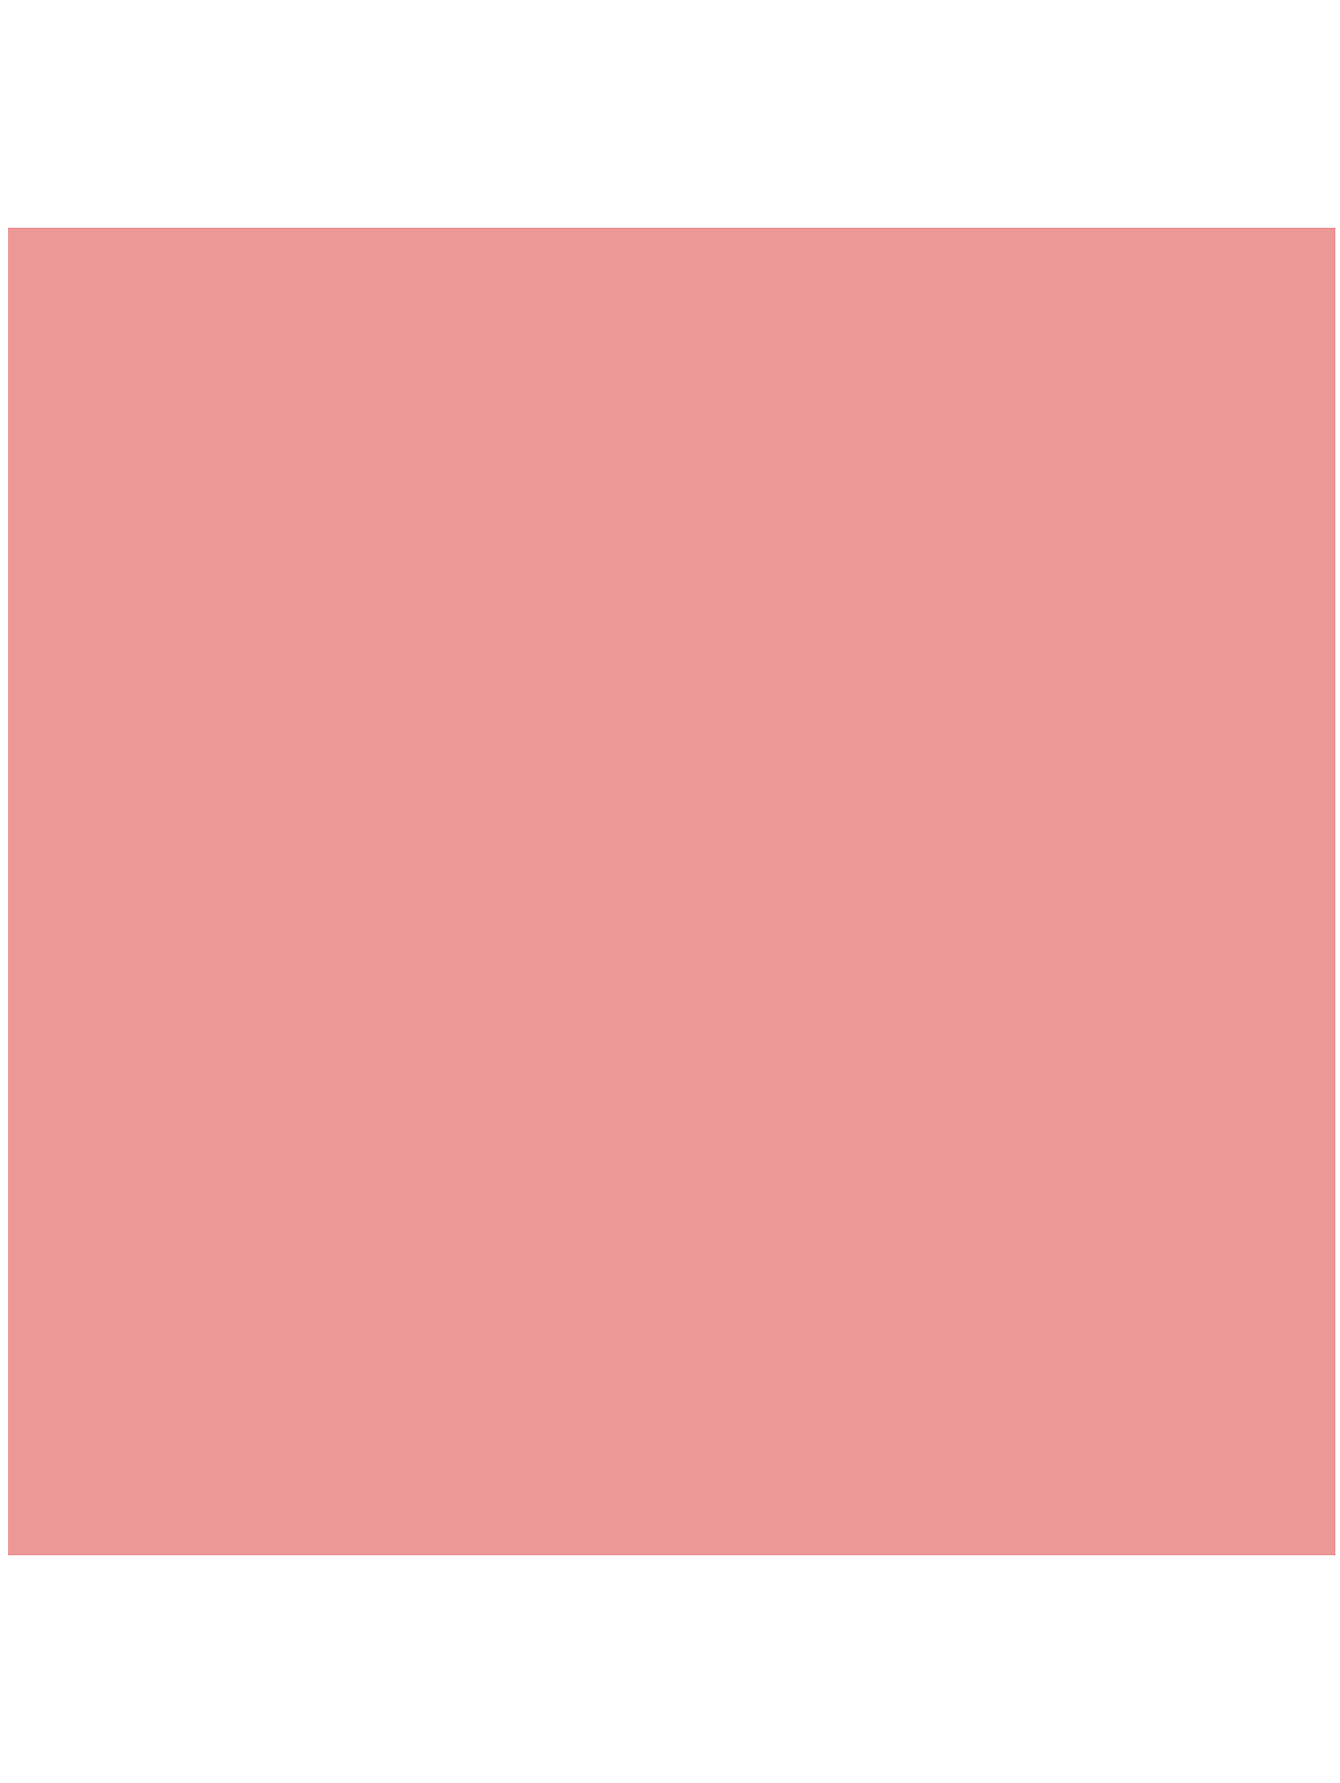 Помада - Spanish Pink, Lip Color - Обтравка1